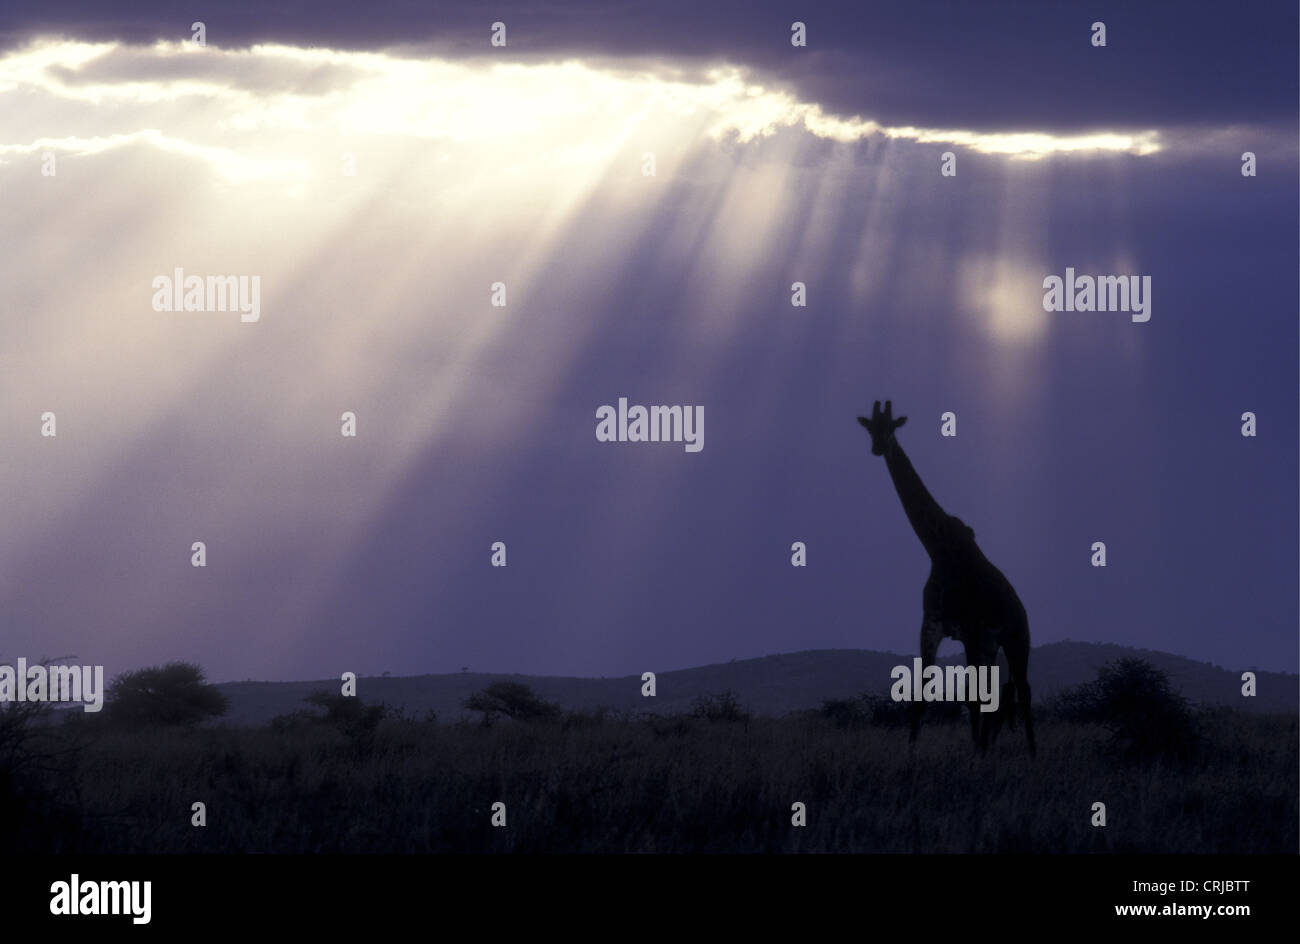 Retikuliert Giraffe Silhouette gegen späten Abend Himmel mit Dramatice Strahlen von Licht, das durch Wolken Samburu, Kenia Stockfoto